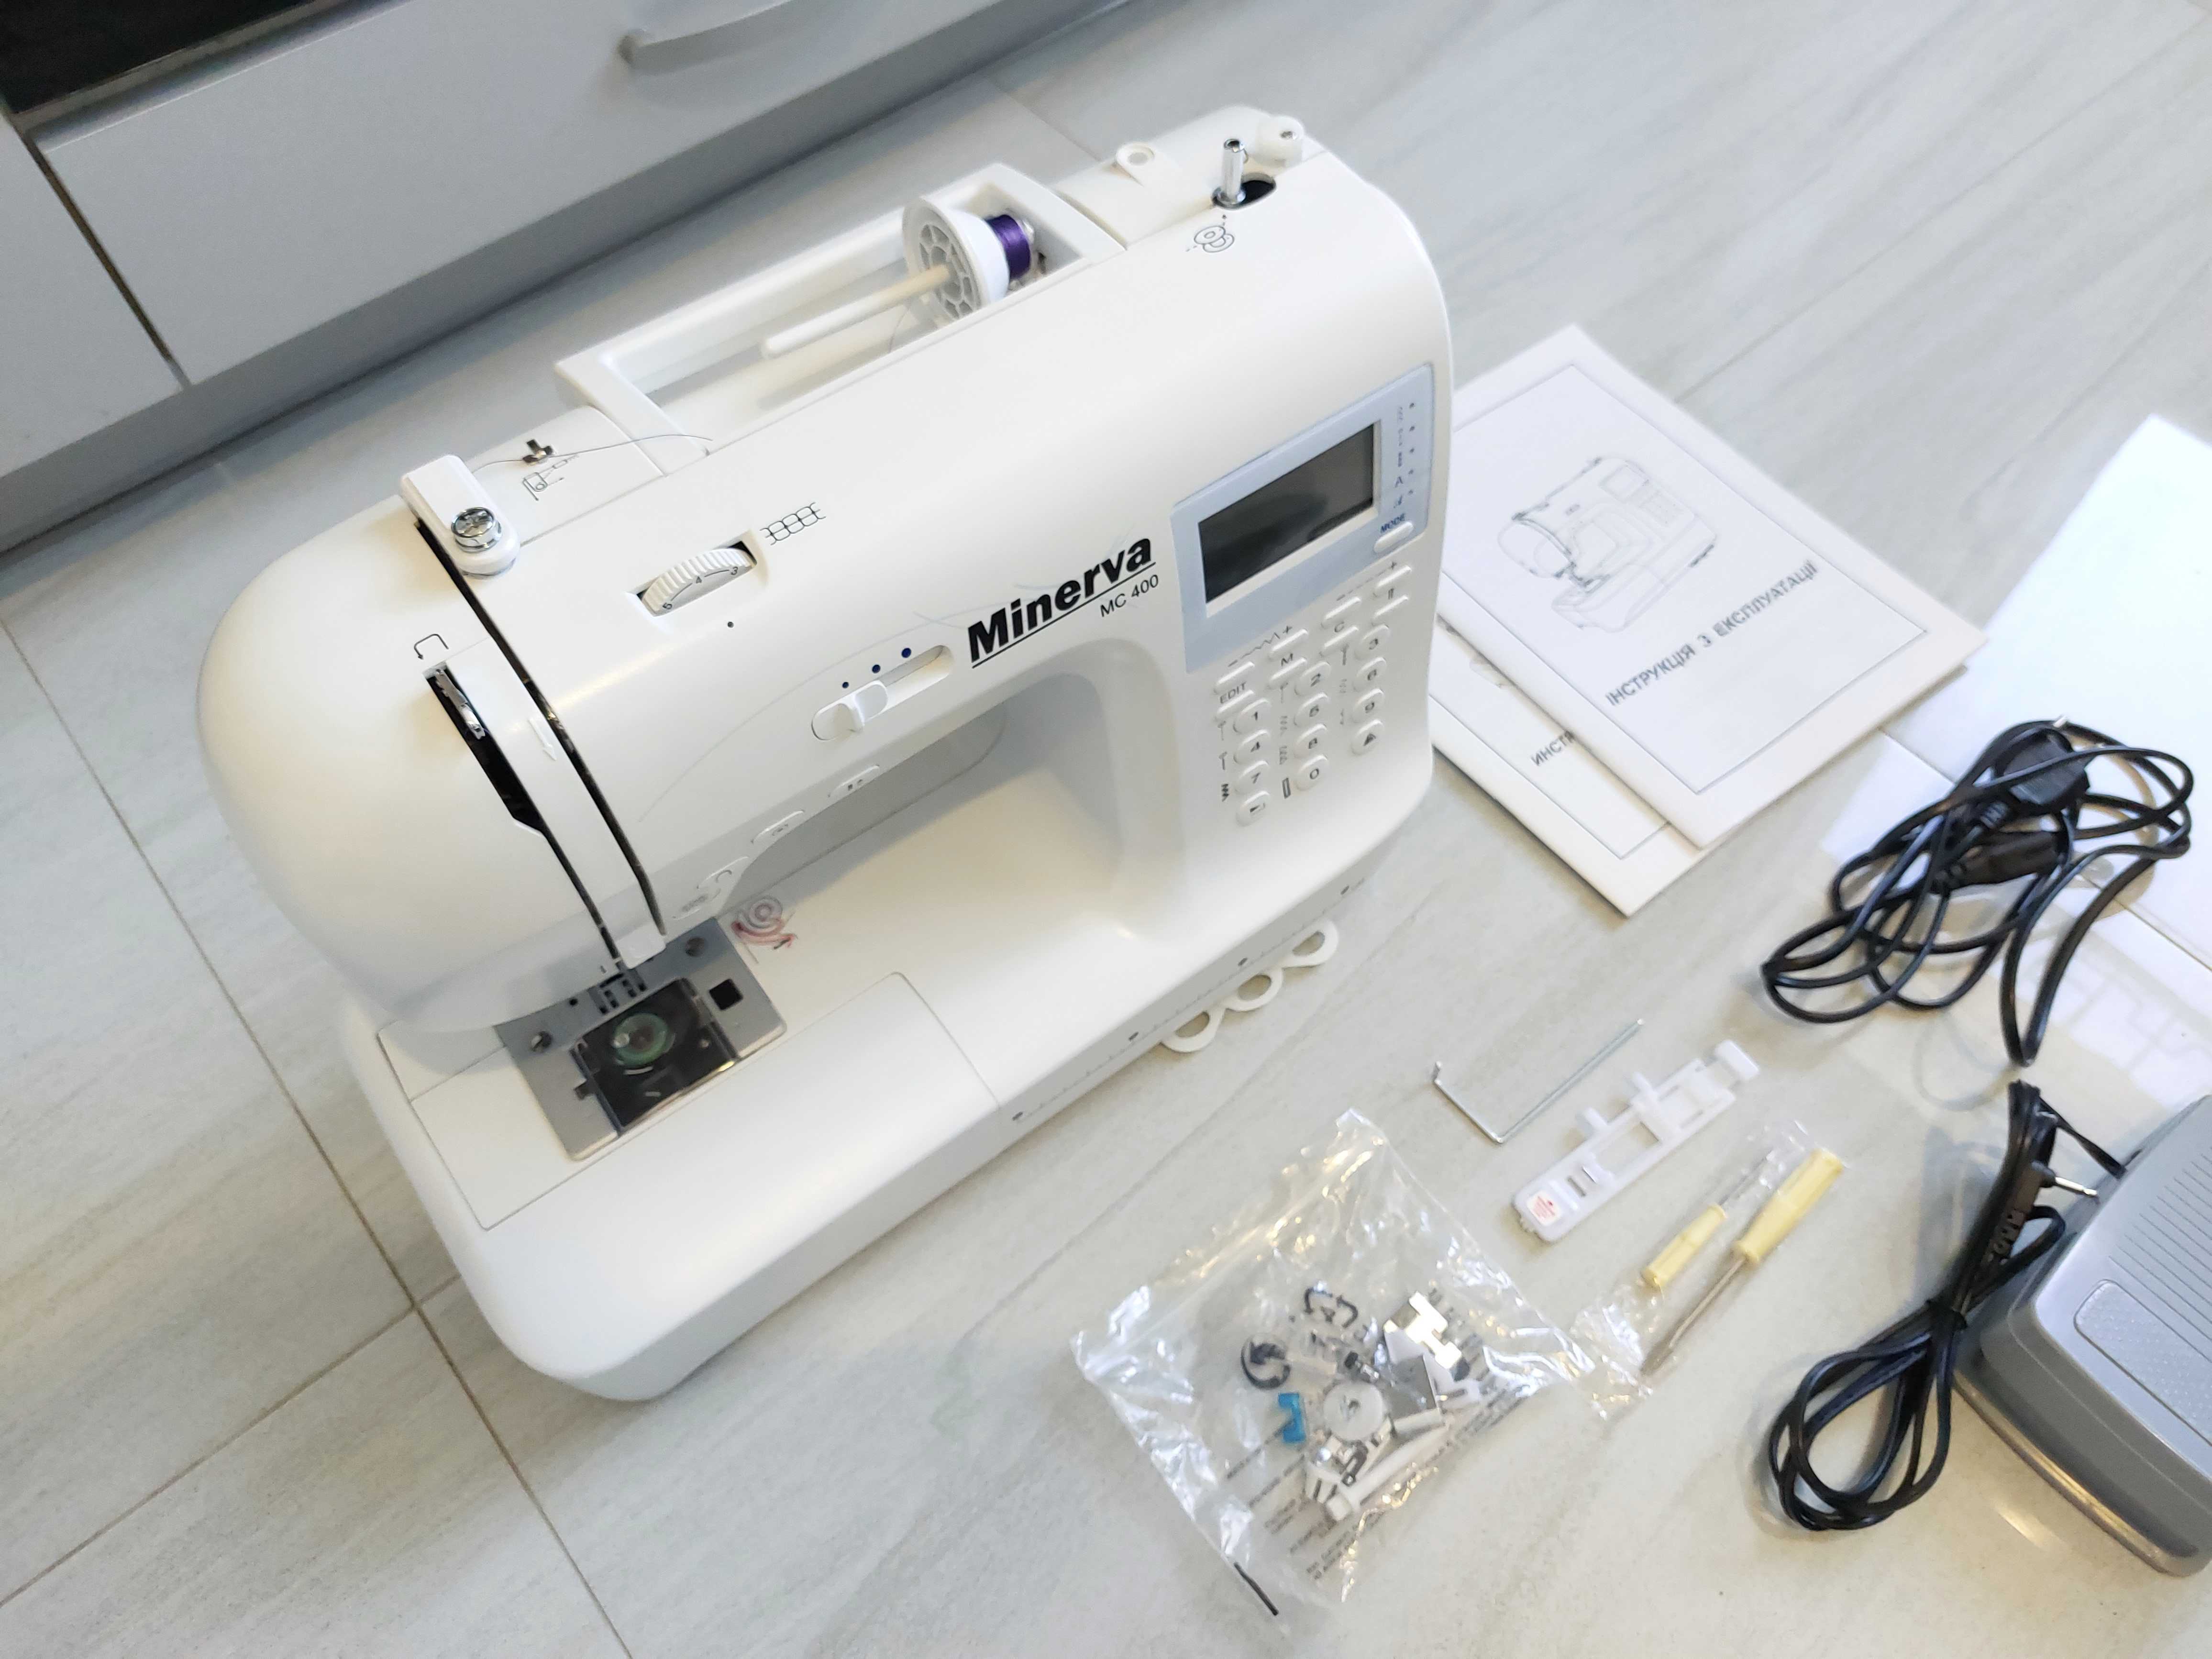 Компьютерная швейная машина Minerva MC 400